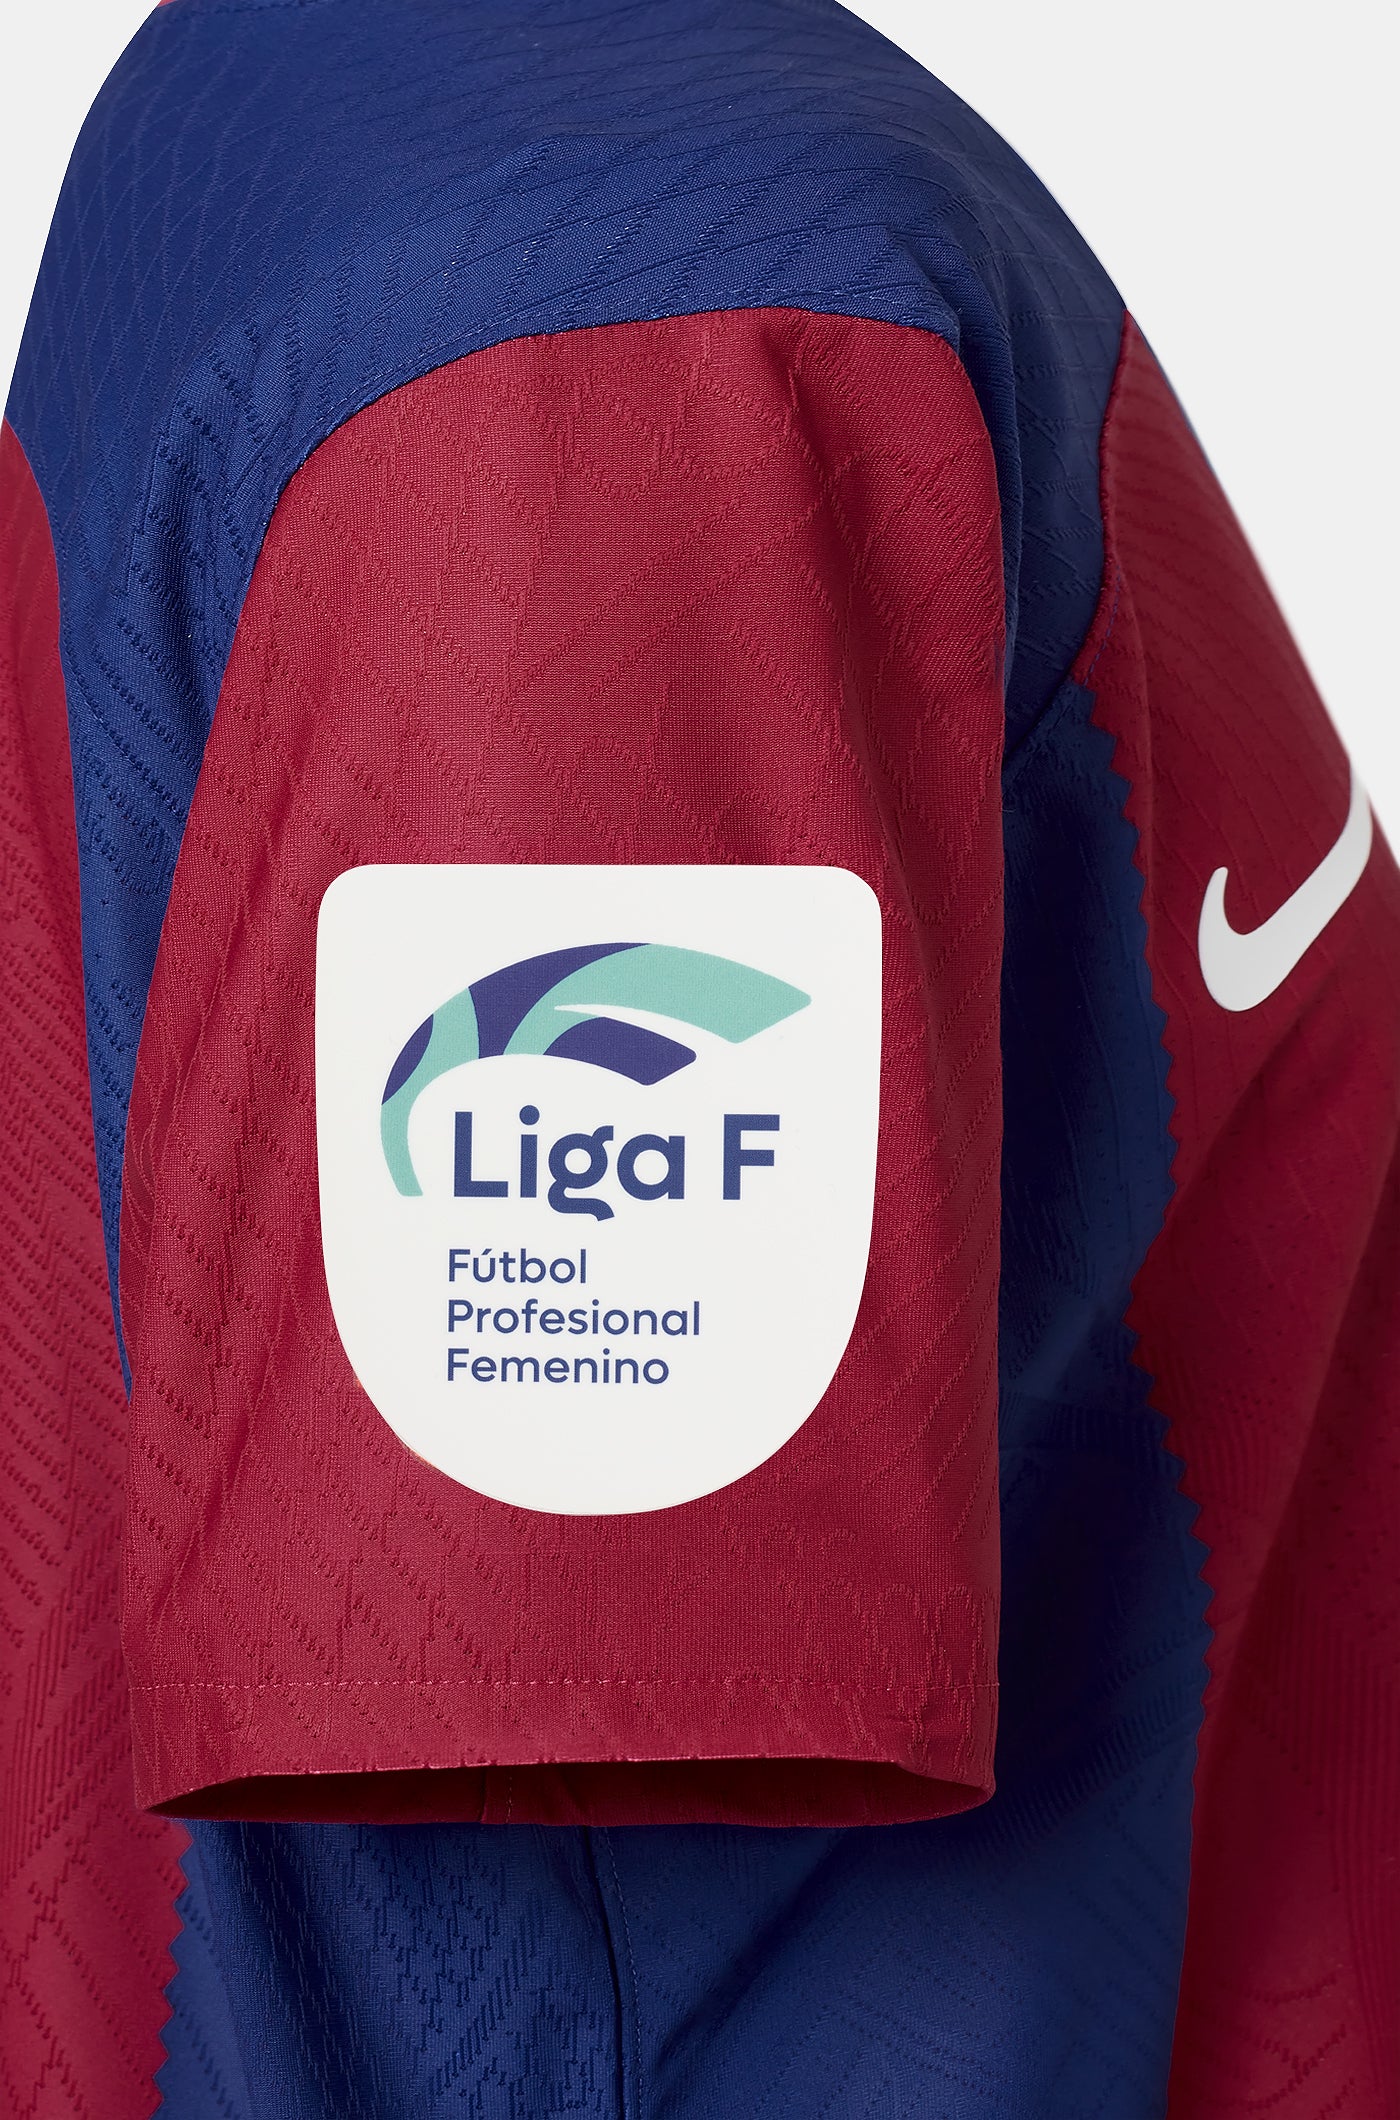 SIGNADA | Samarreta femenina FC BARCELONA X KAROL G d’edició limitada signada per l’equip titular que disputarà el Clàssic i l’equip femení titular del FC Barcelona-Villarreal